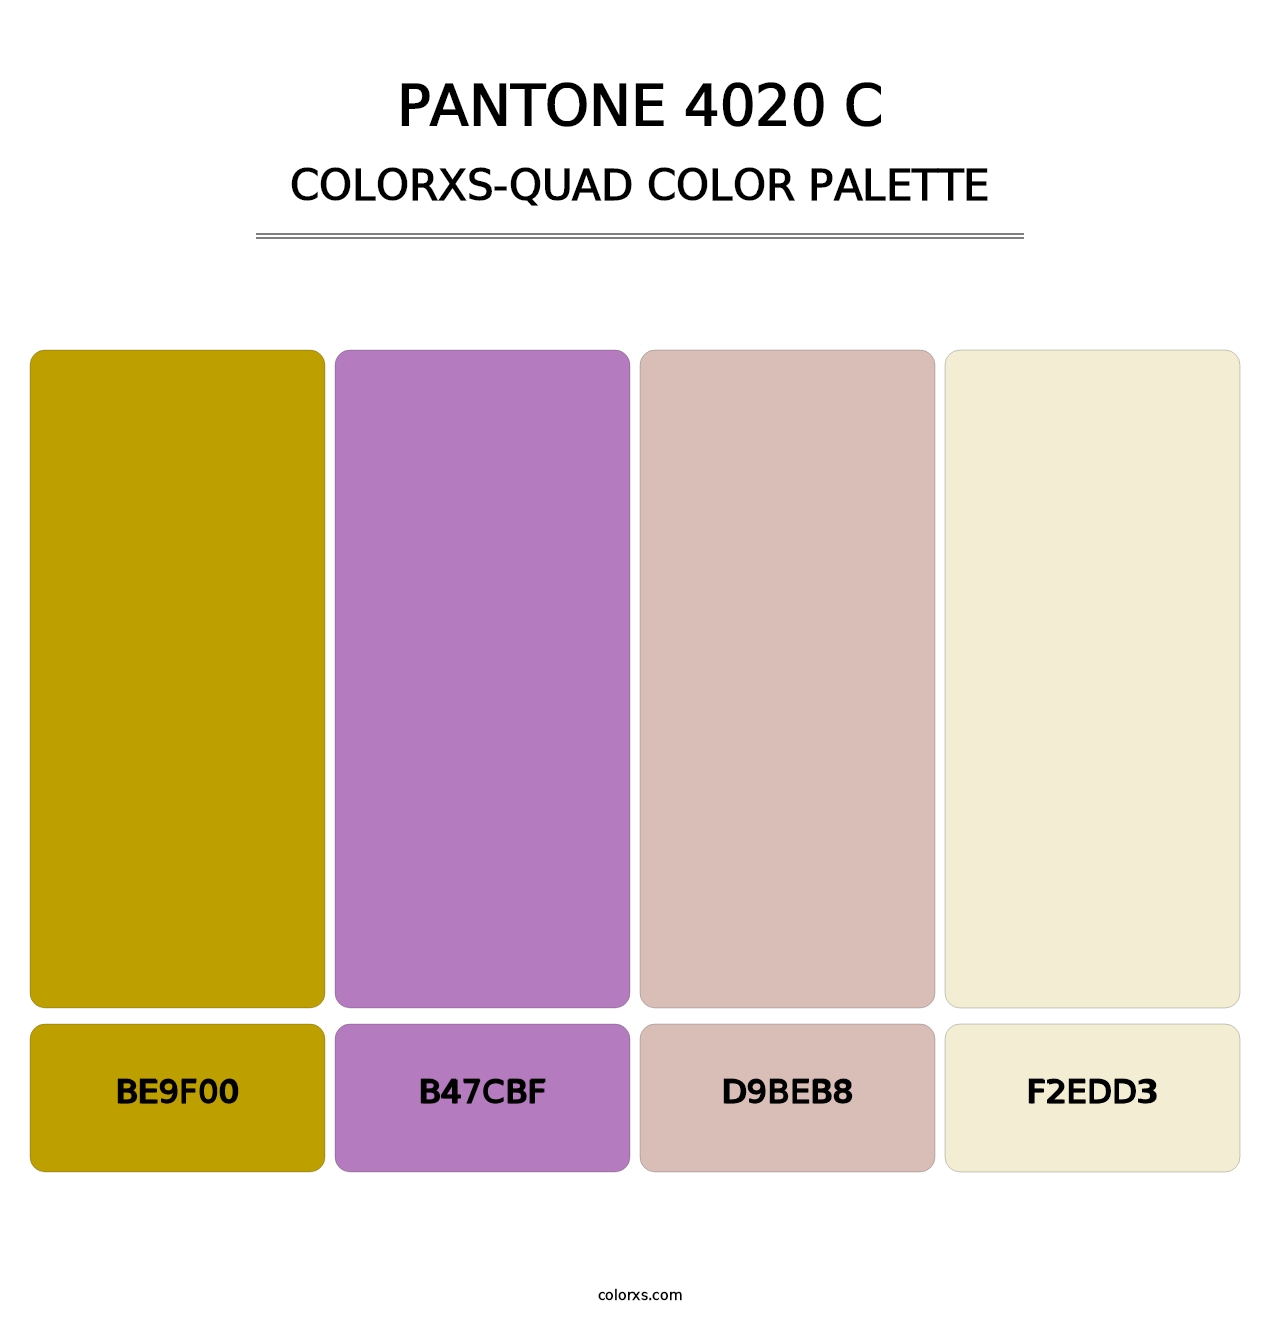 PANTONE 4020 C - Colorxs Quad Palette